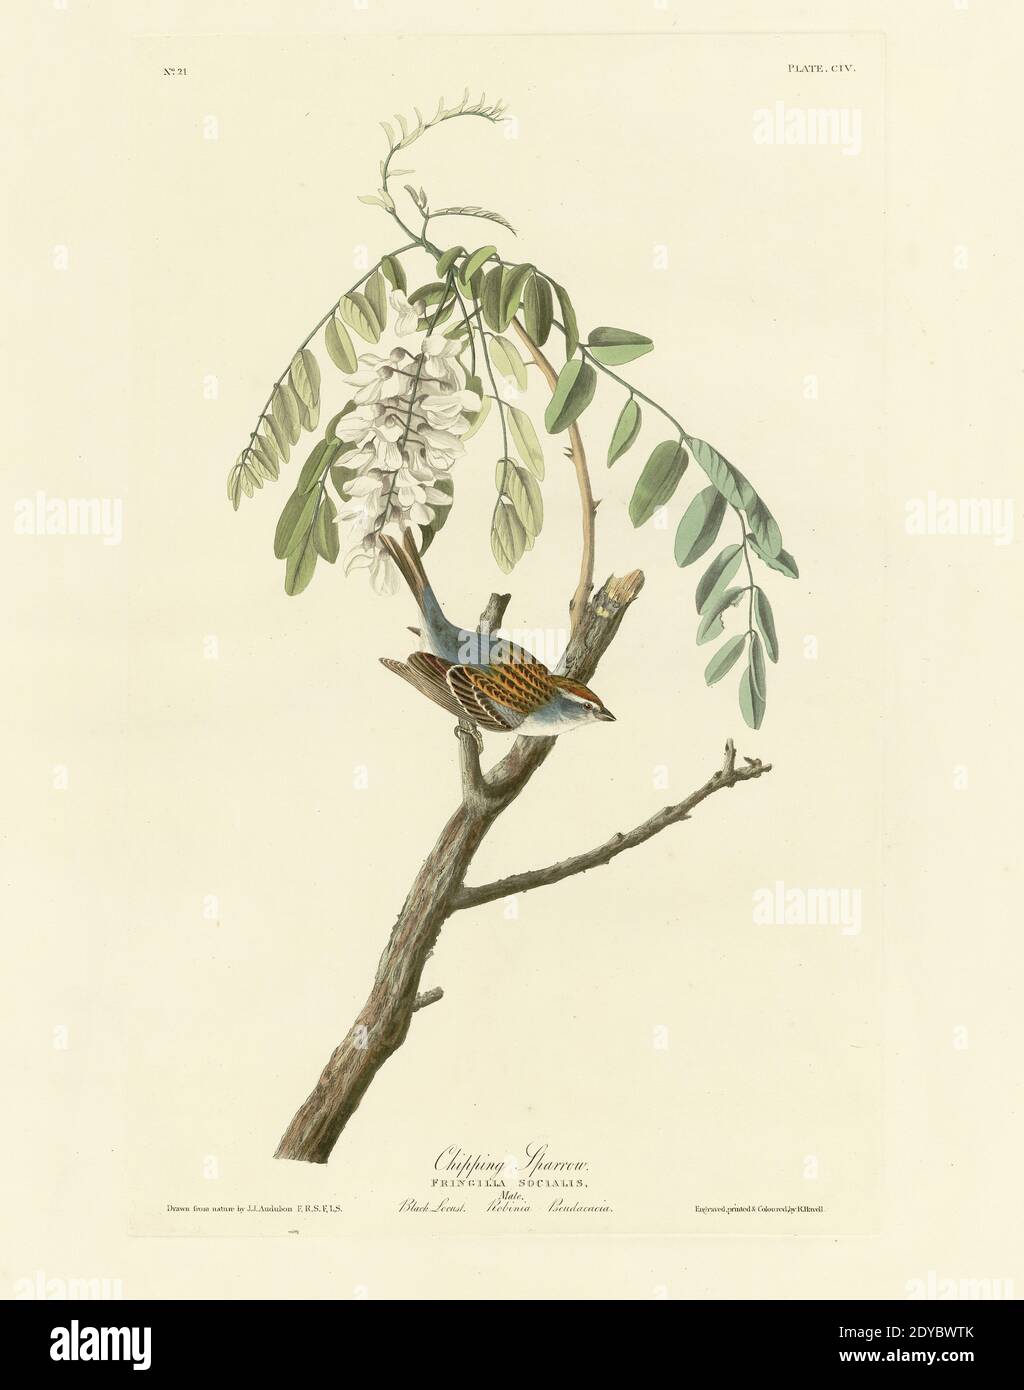 Plate 104 Chipping Sparrow, from the Birds of America folio (1827–1839) di John James Audubon - immagine modificata di altissima risoluzione e qualità Foto Stock